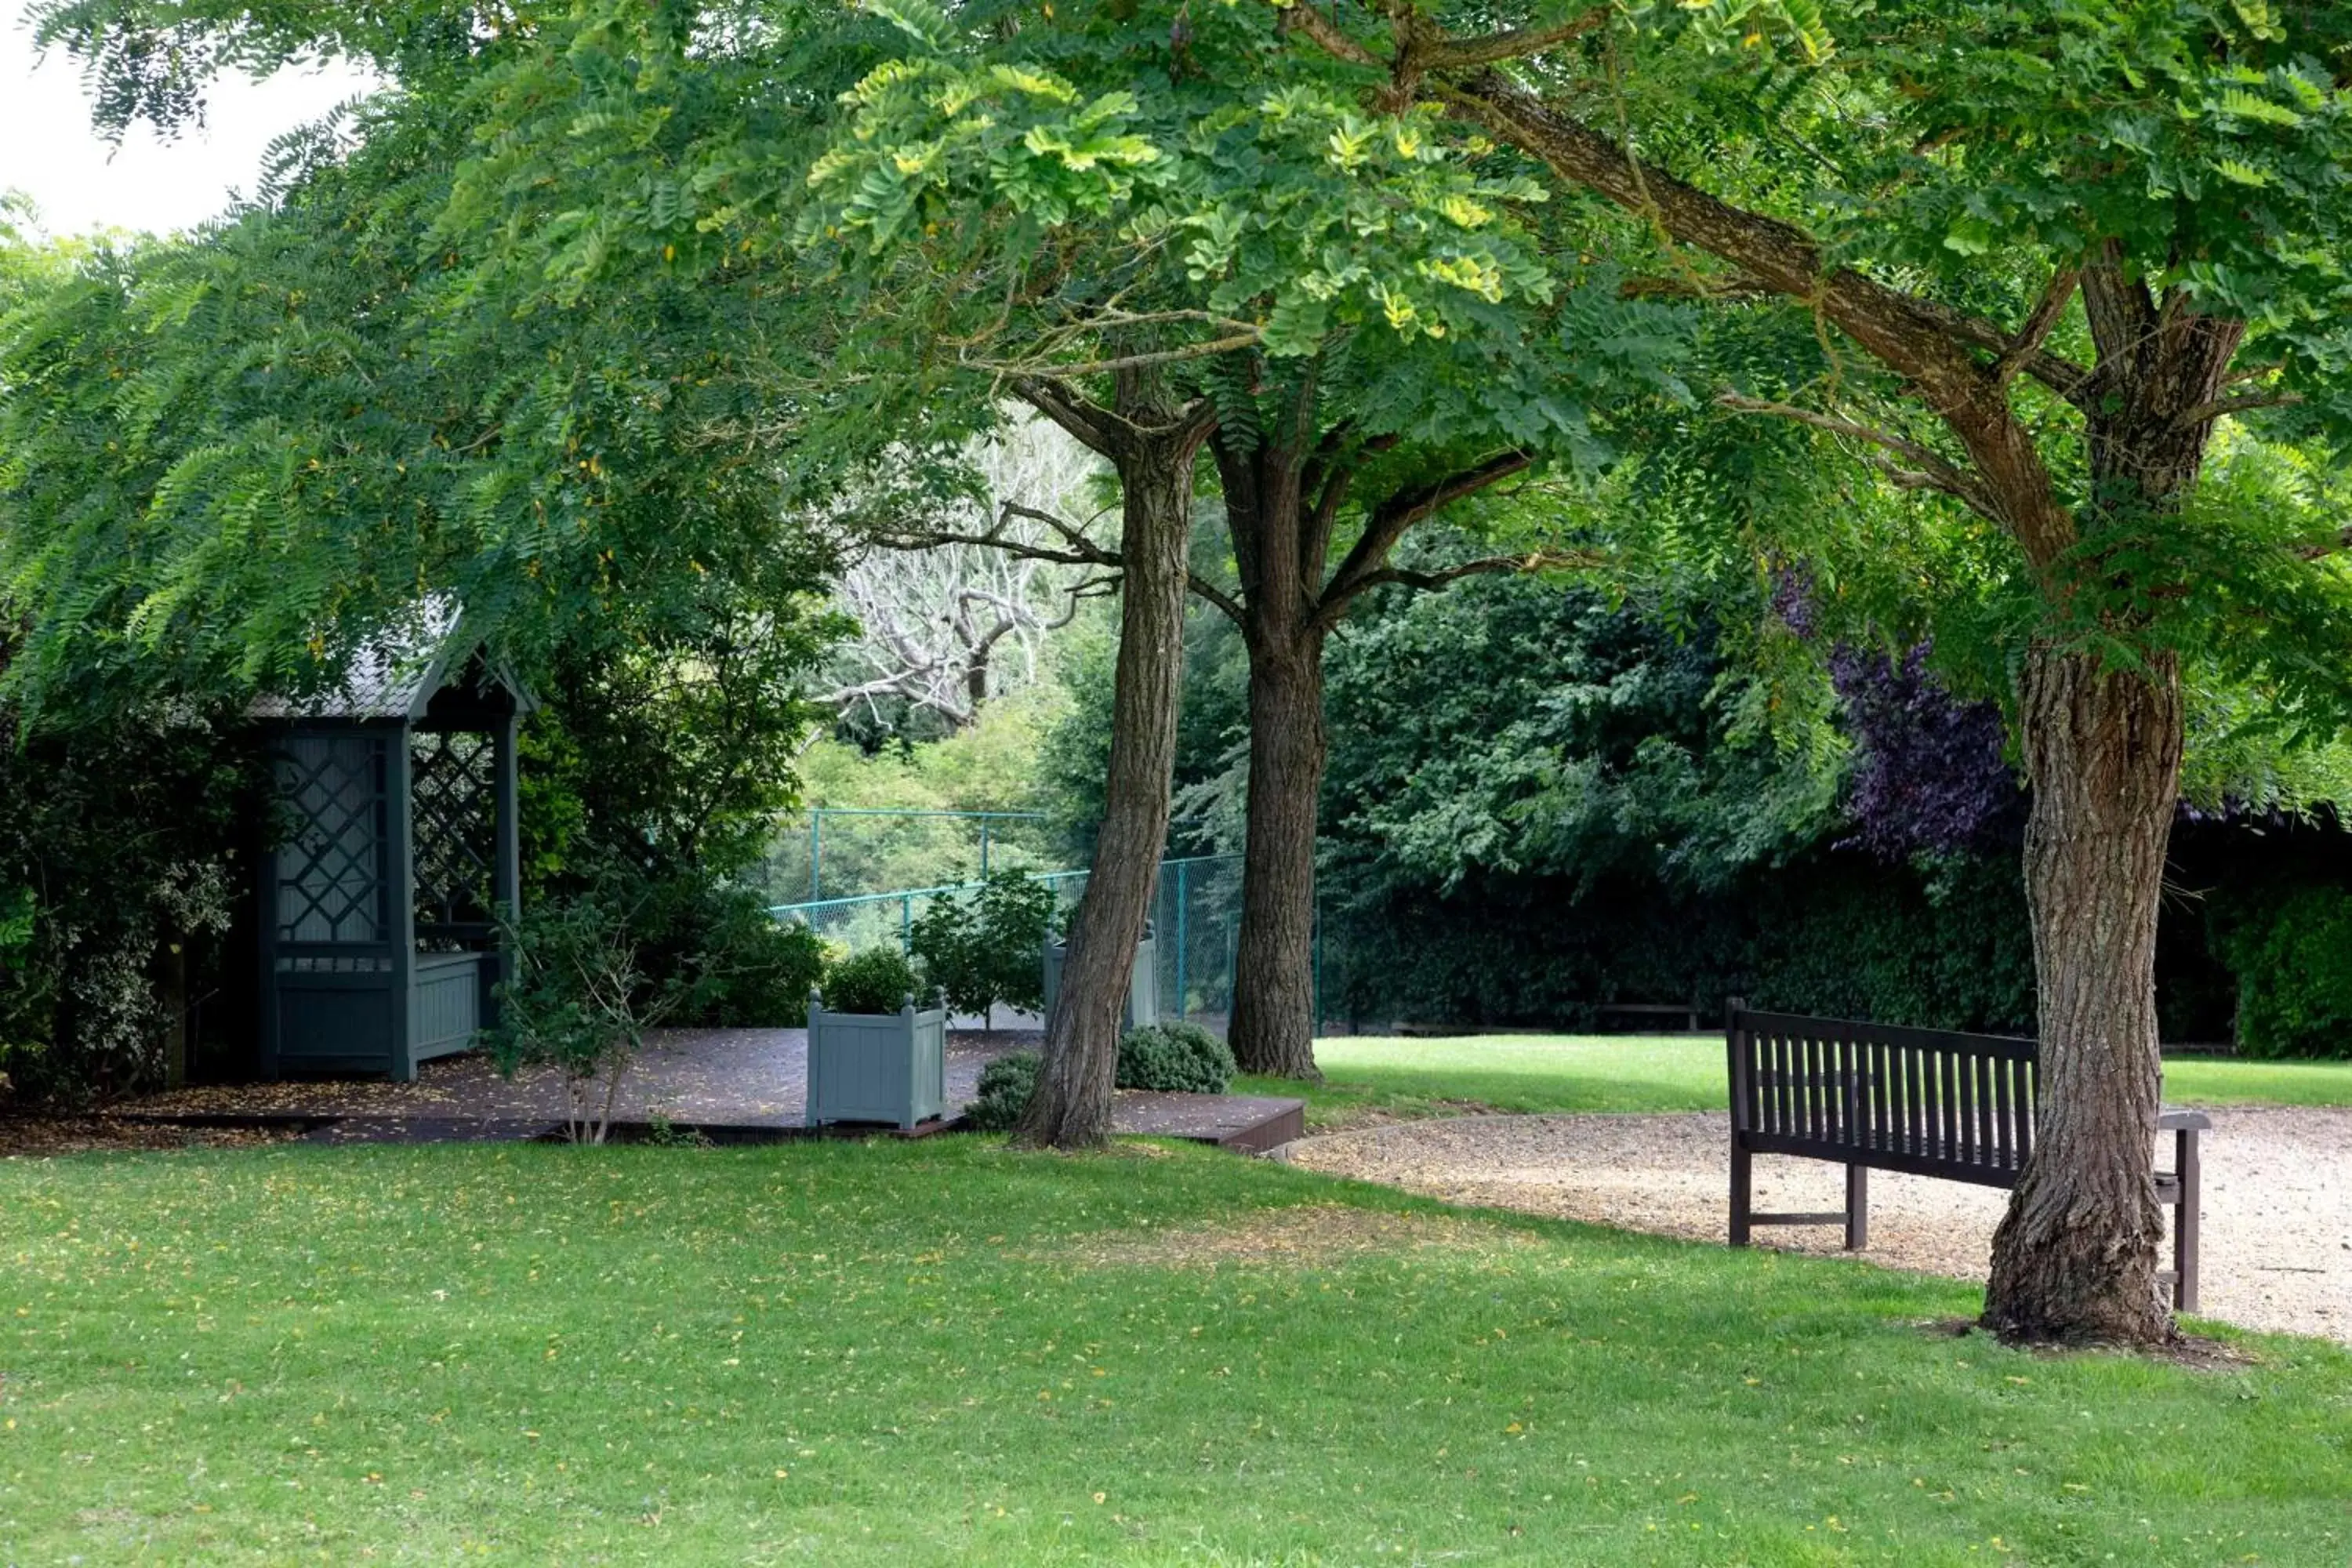 Garden in DoubleTree by Hilton Oxford Belfry